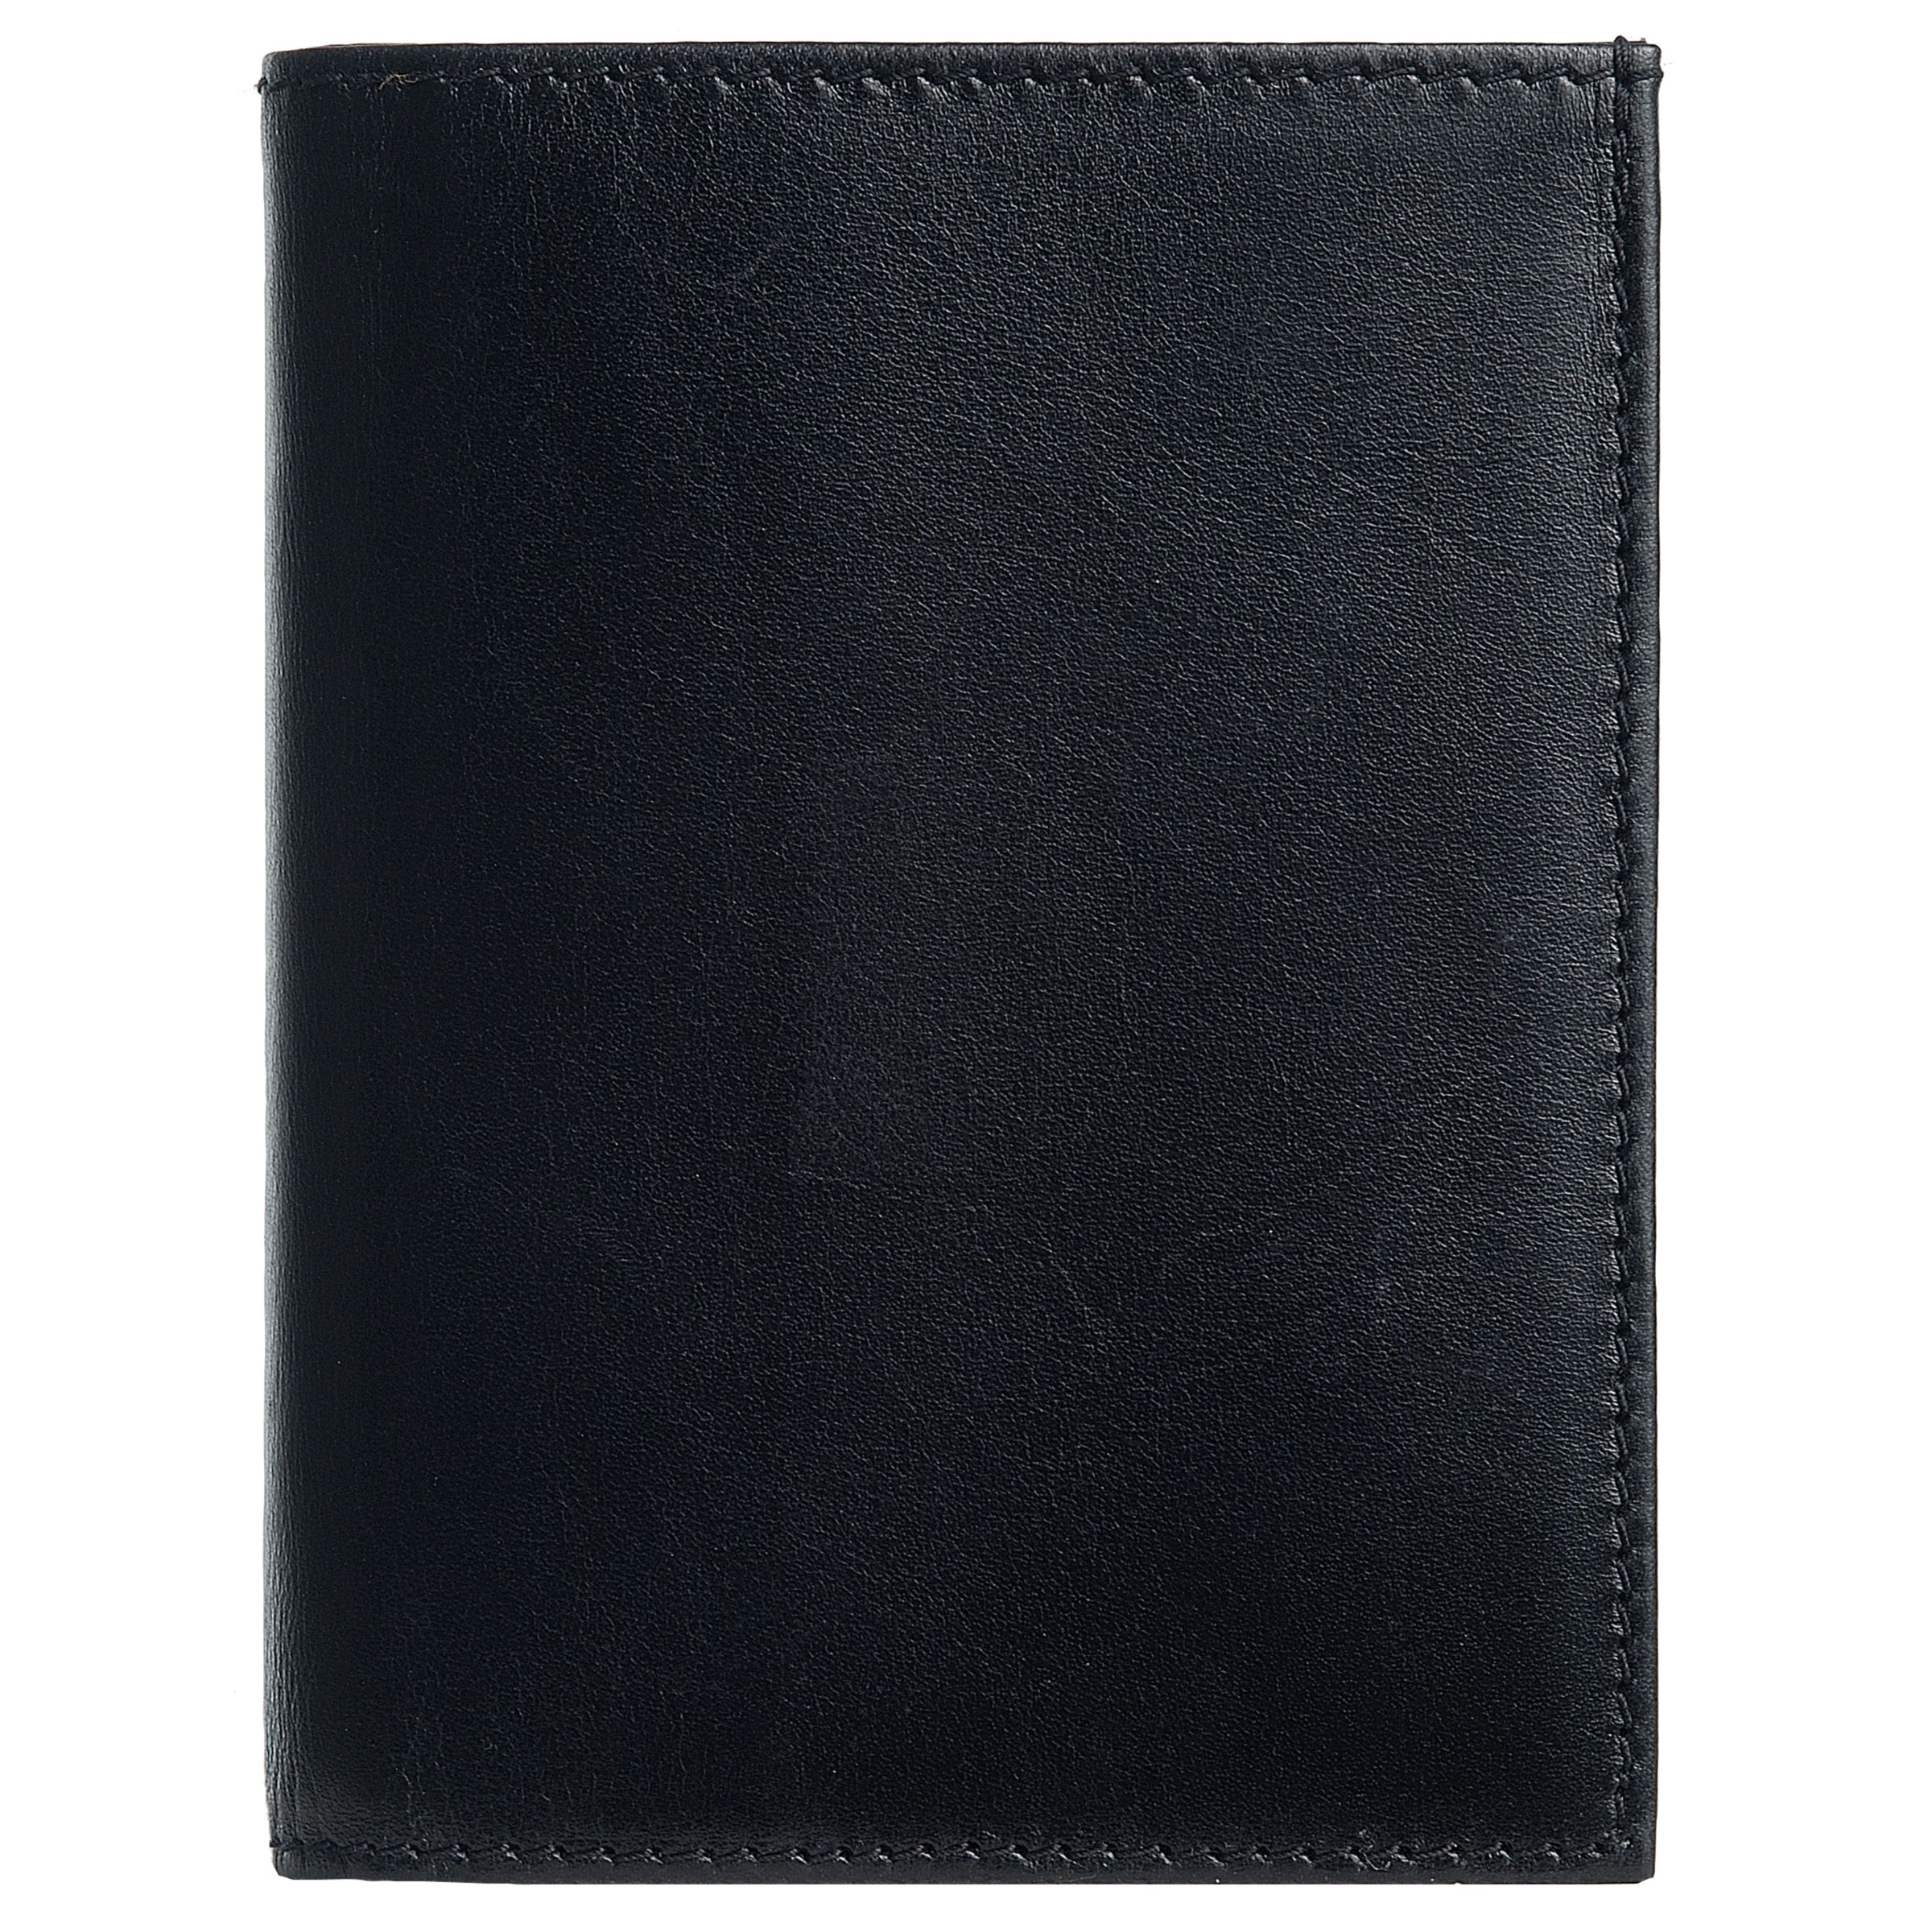 Premium Leather Card Case, Black 51519